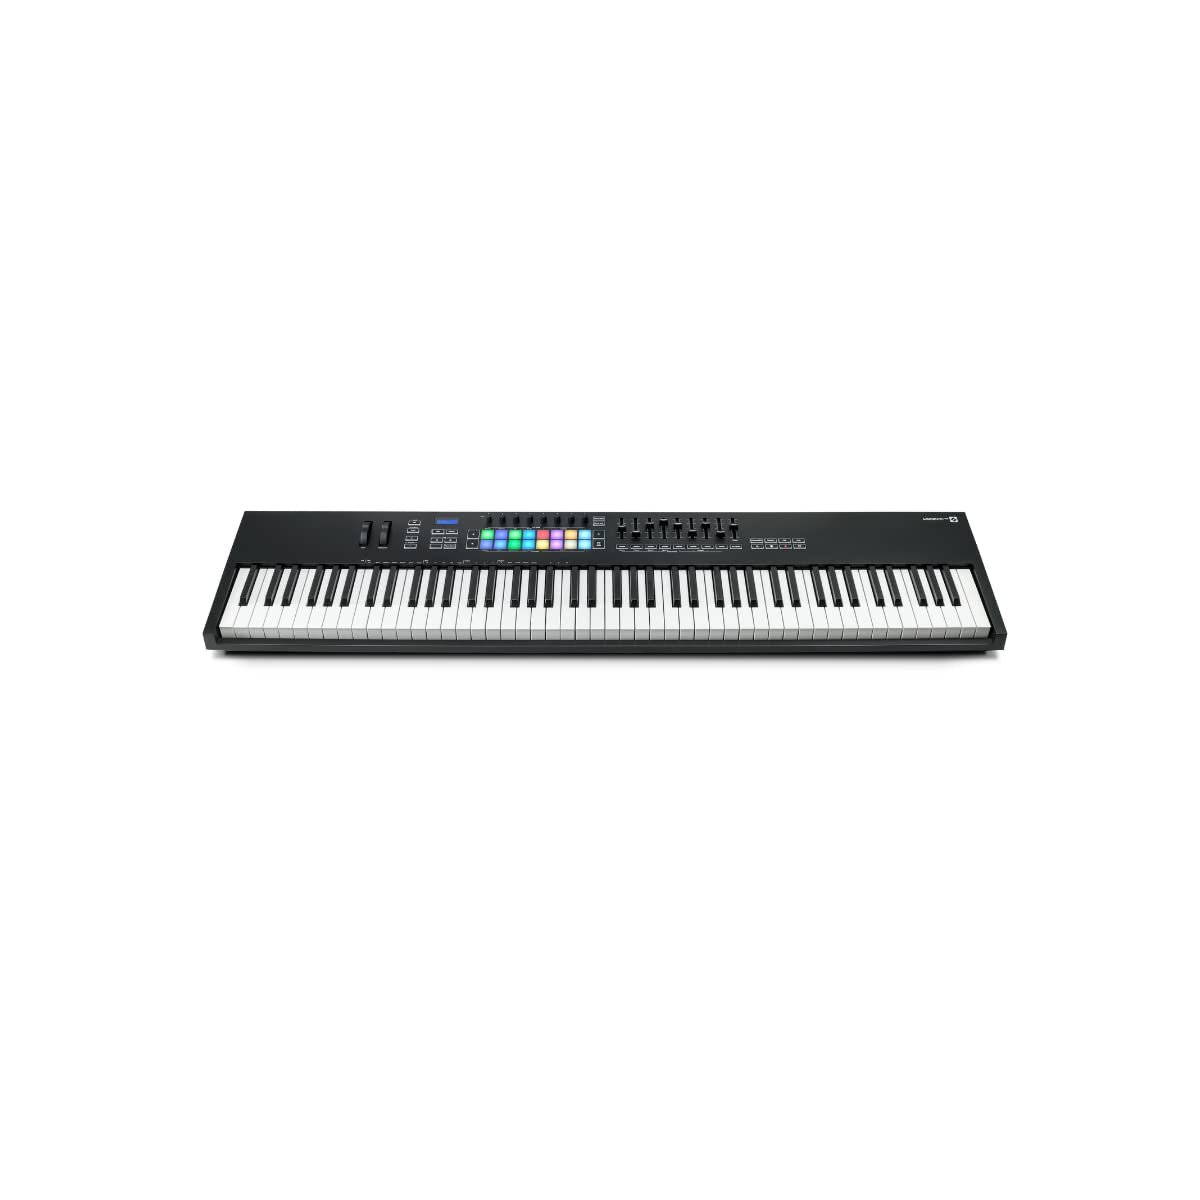 Novation एबलटन लाइव के लिए लॉन्चकी 88 [एमके3] मिडी कीबोर्ड नियंत्रक